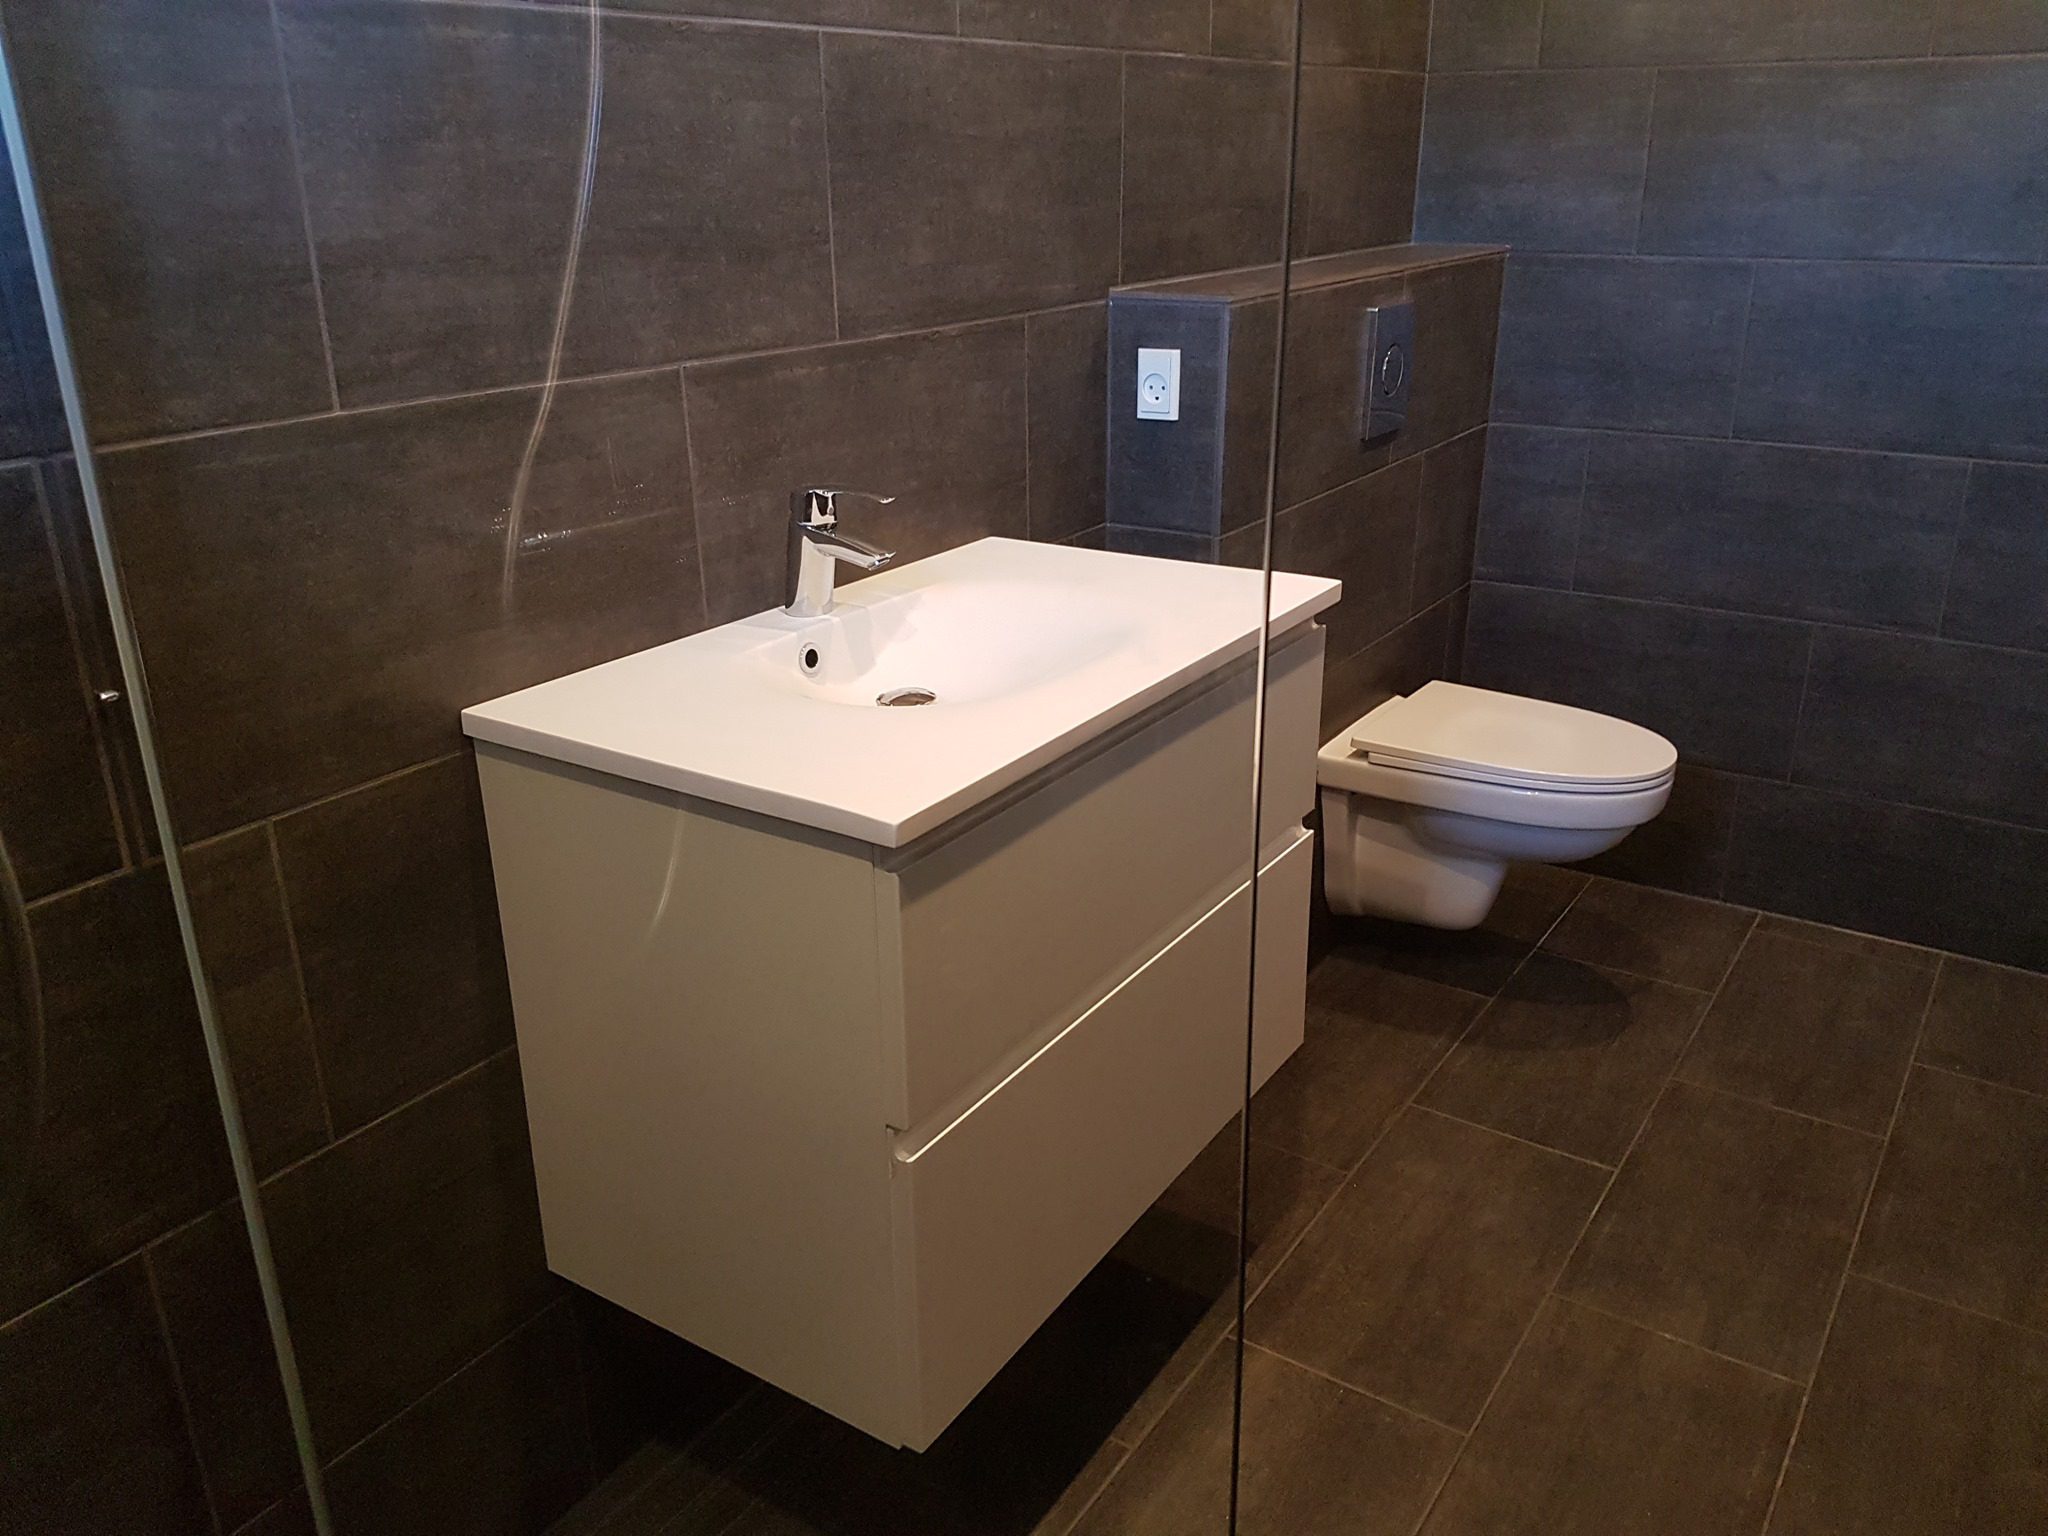 Renovering af badeværelse i Viby.S